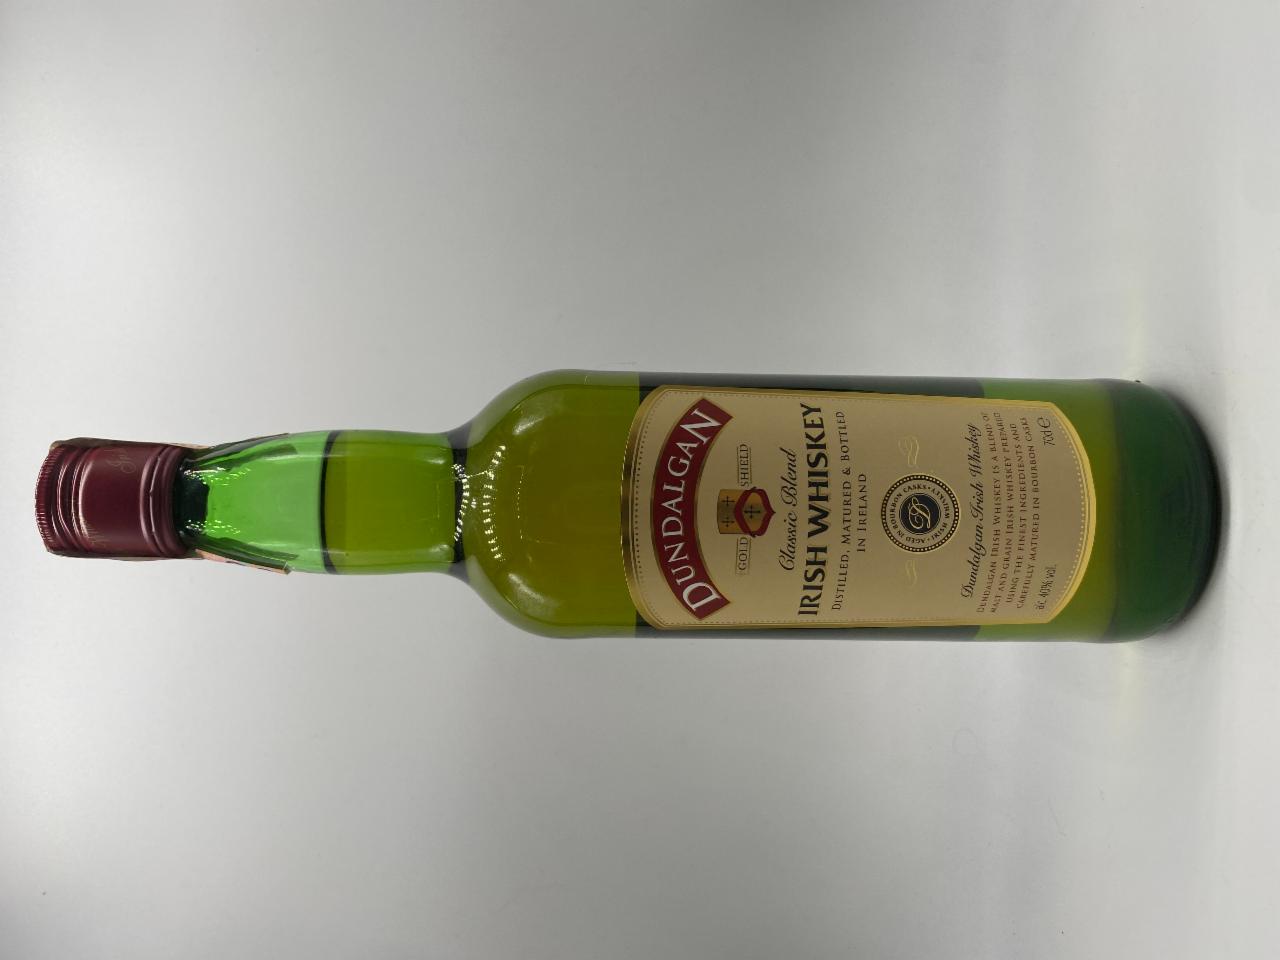 J&B scotch whisky 40% - nutriční hodnoty a kJ kalorie